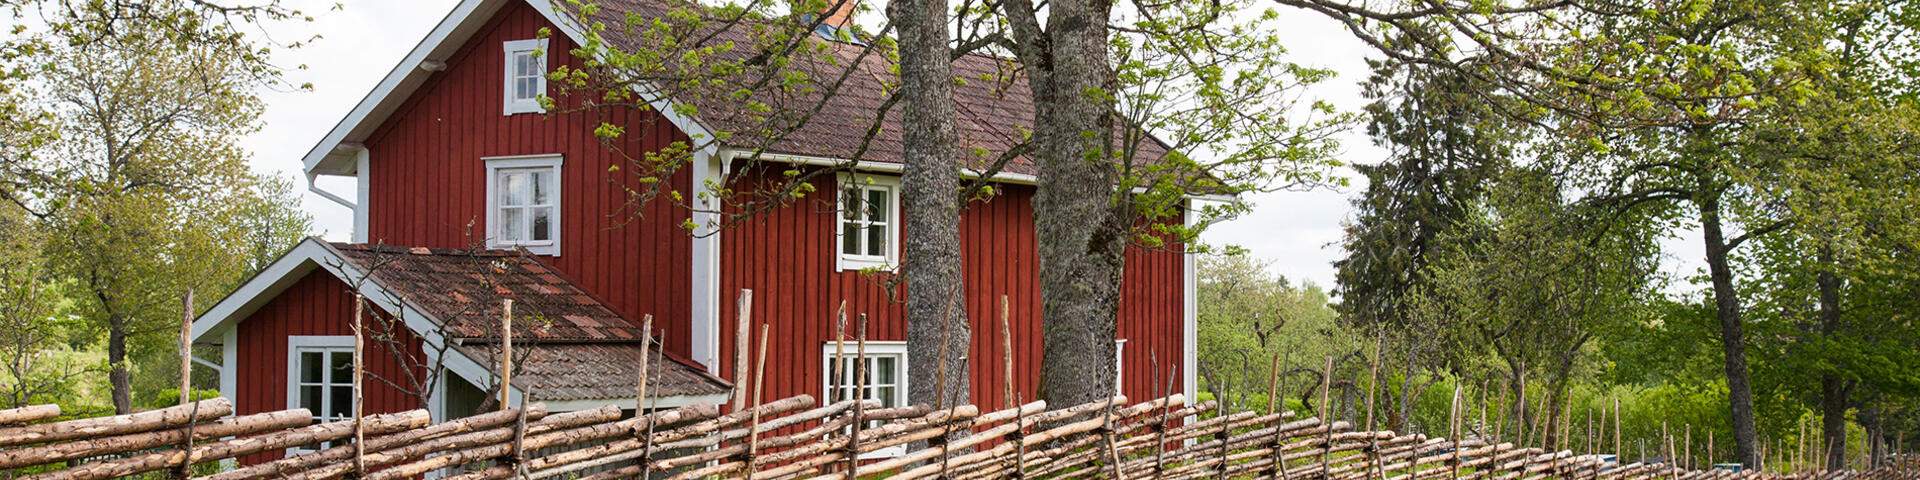 Röd småländsk stuga bakom gärdesgård i lantligt sommarlandskap